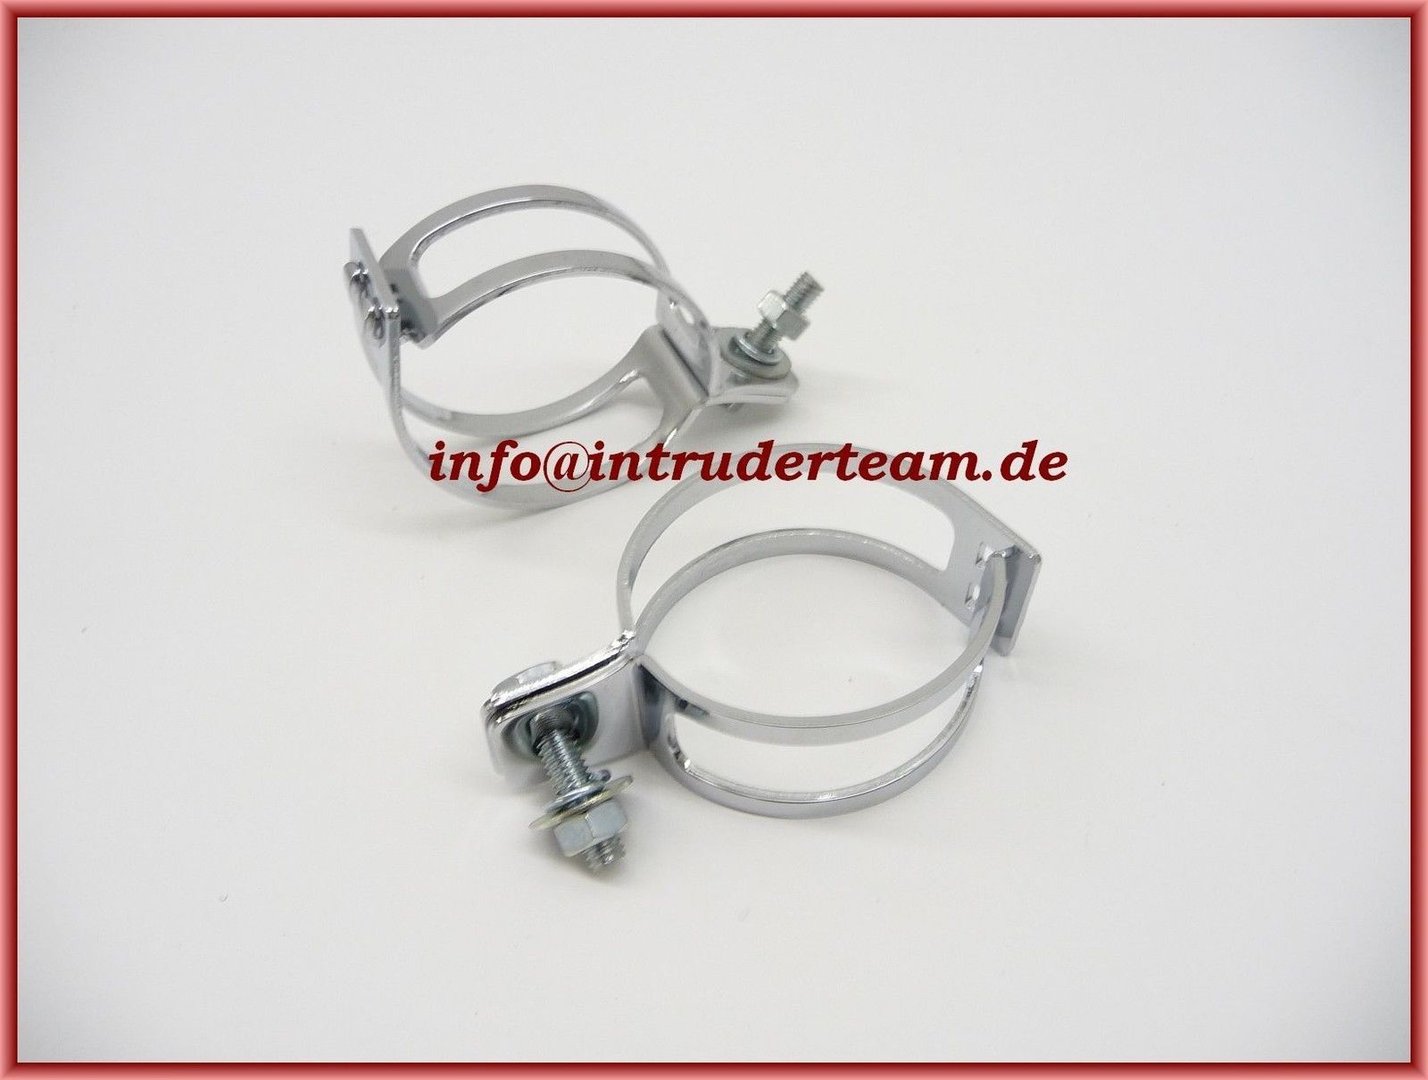 Indicator- winker clamp, 2pcs., chromed, 51-54 mm, pair